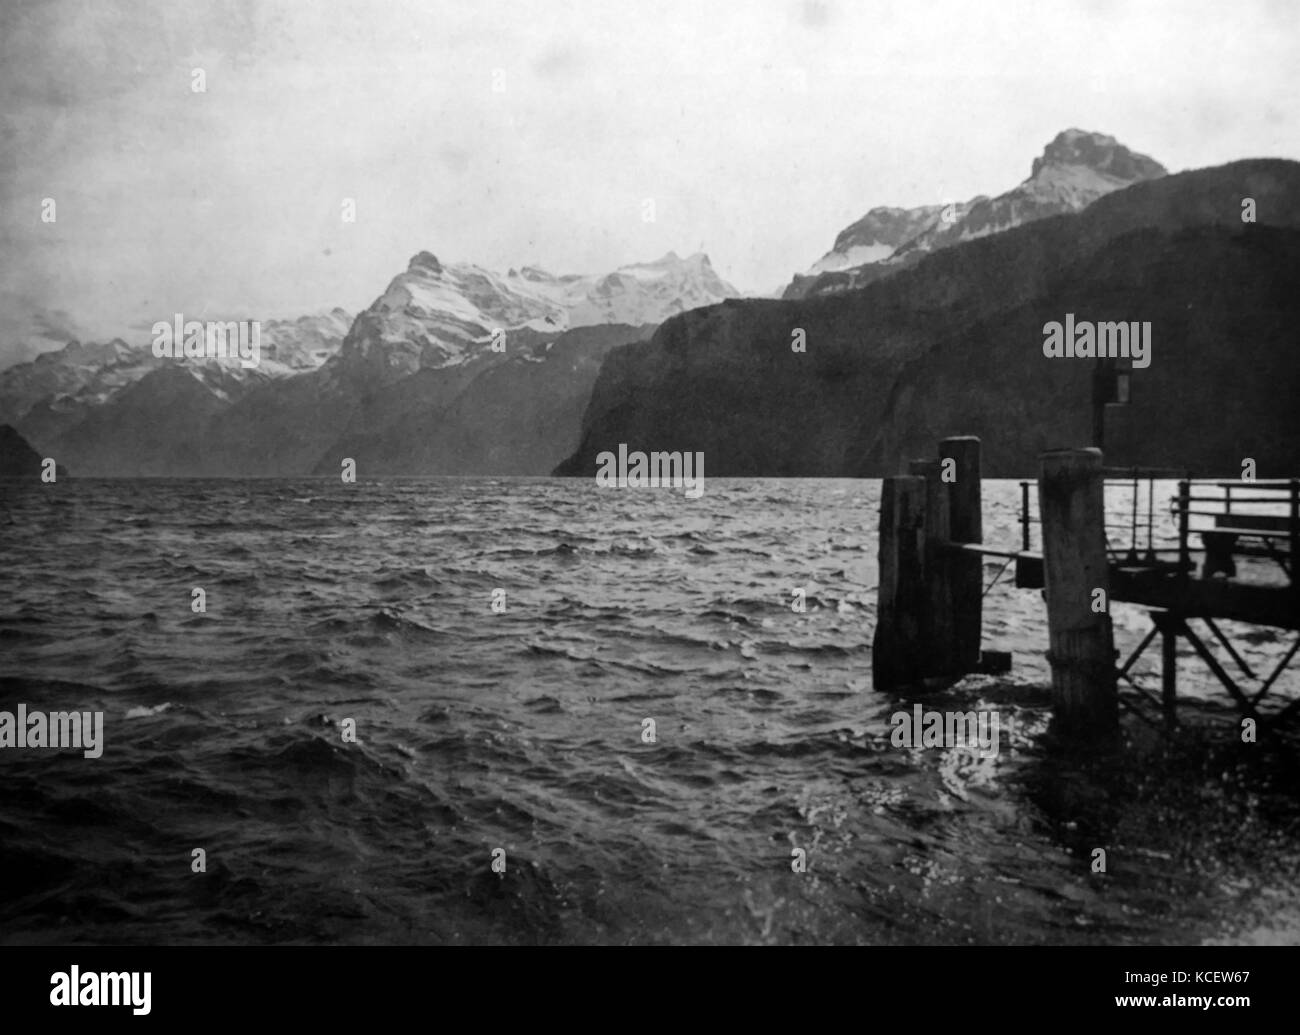 Böen in absteigender Reihenfolge von einem Schweizer Fohn. 1910. (Ein Föhn oder Föhn ist eine Art von trockenen, warmen, unten - hang Wind, in der Lee (Lee Seite) eines Gebirges auftritt). Stockfoto